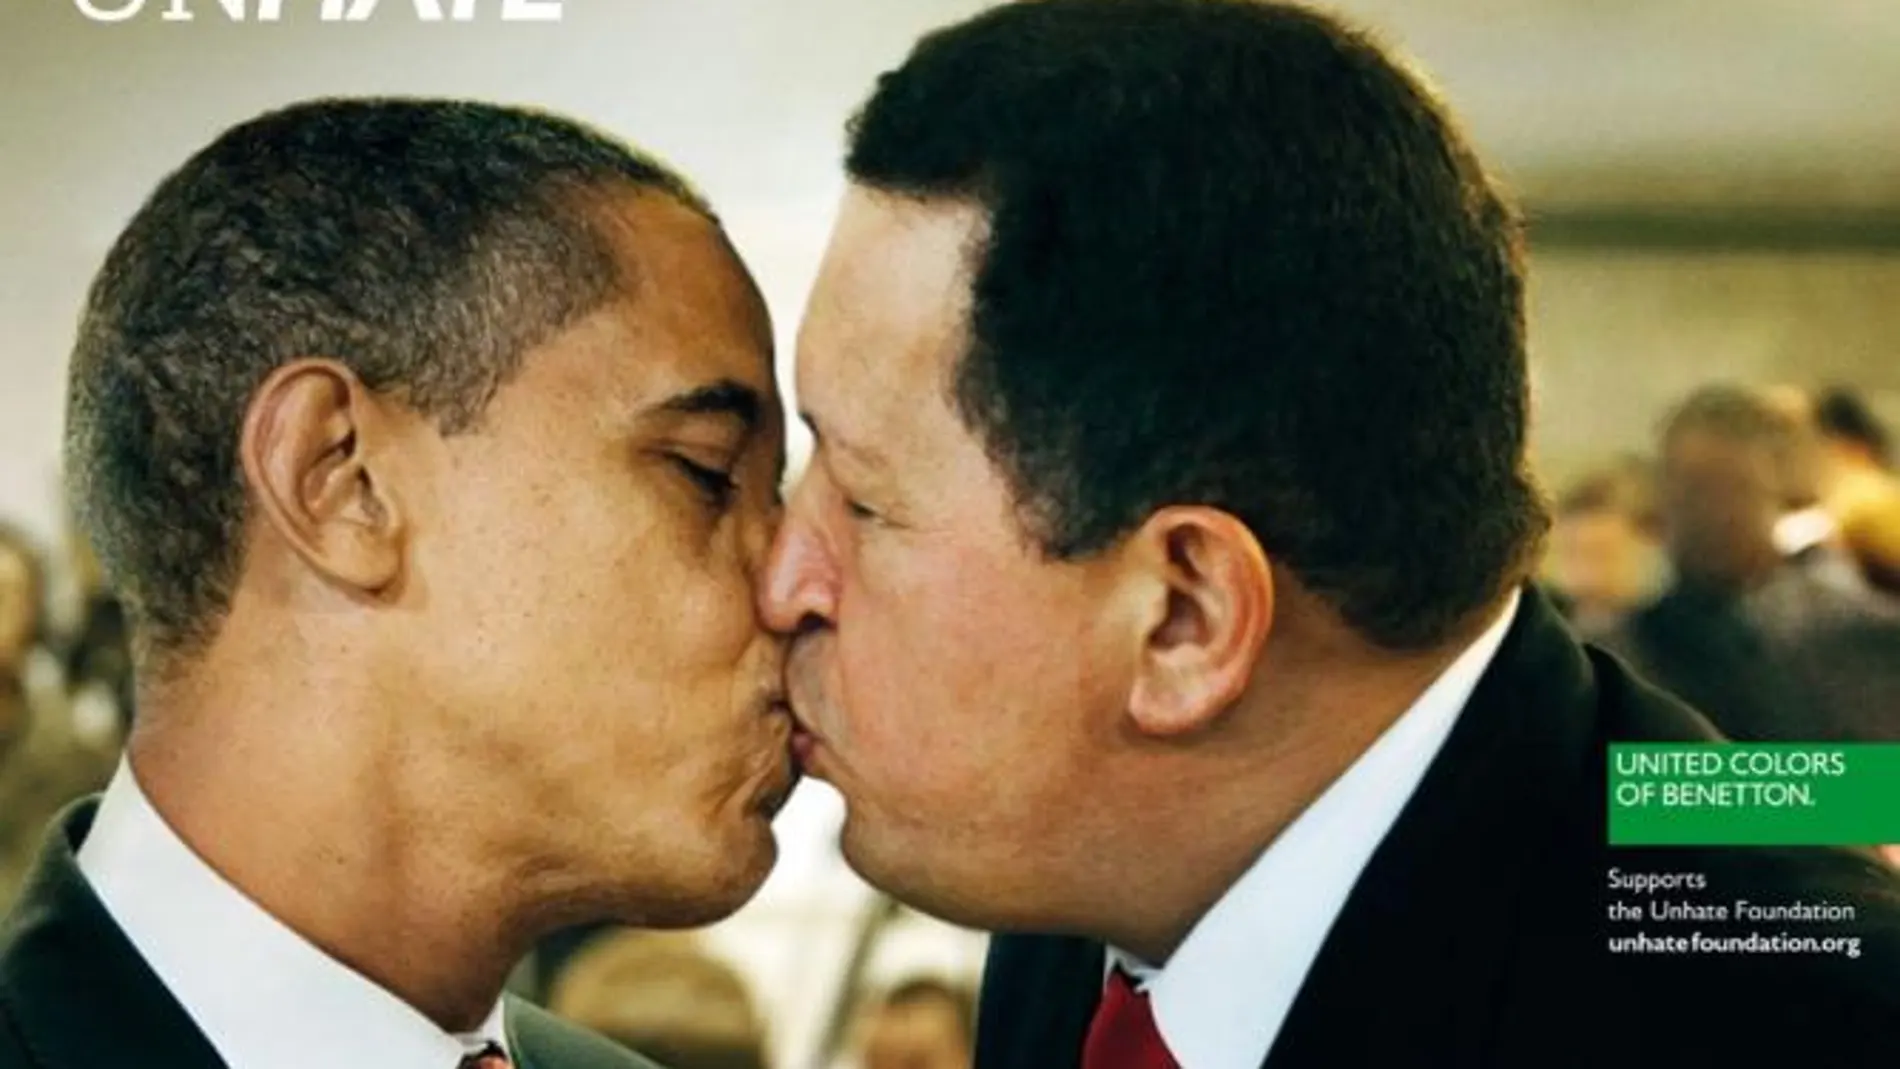 Unas de las campañas más icónicas de los Benetton «besos contra el odio» que desató la polémica. En la imagen Obama besa a Chávez